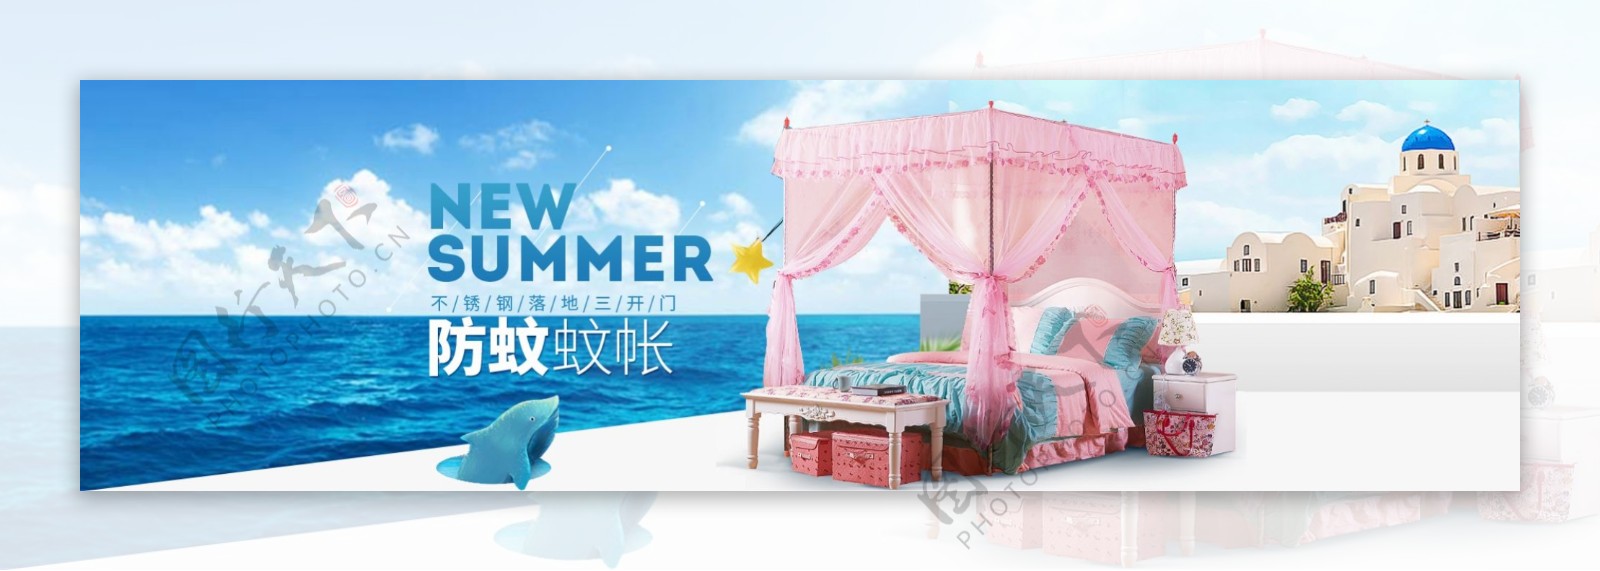 淘宝天猫夏季促销家纺被子海报设计活动海报